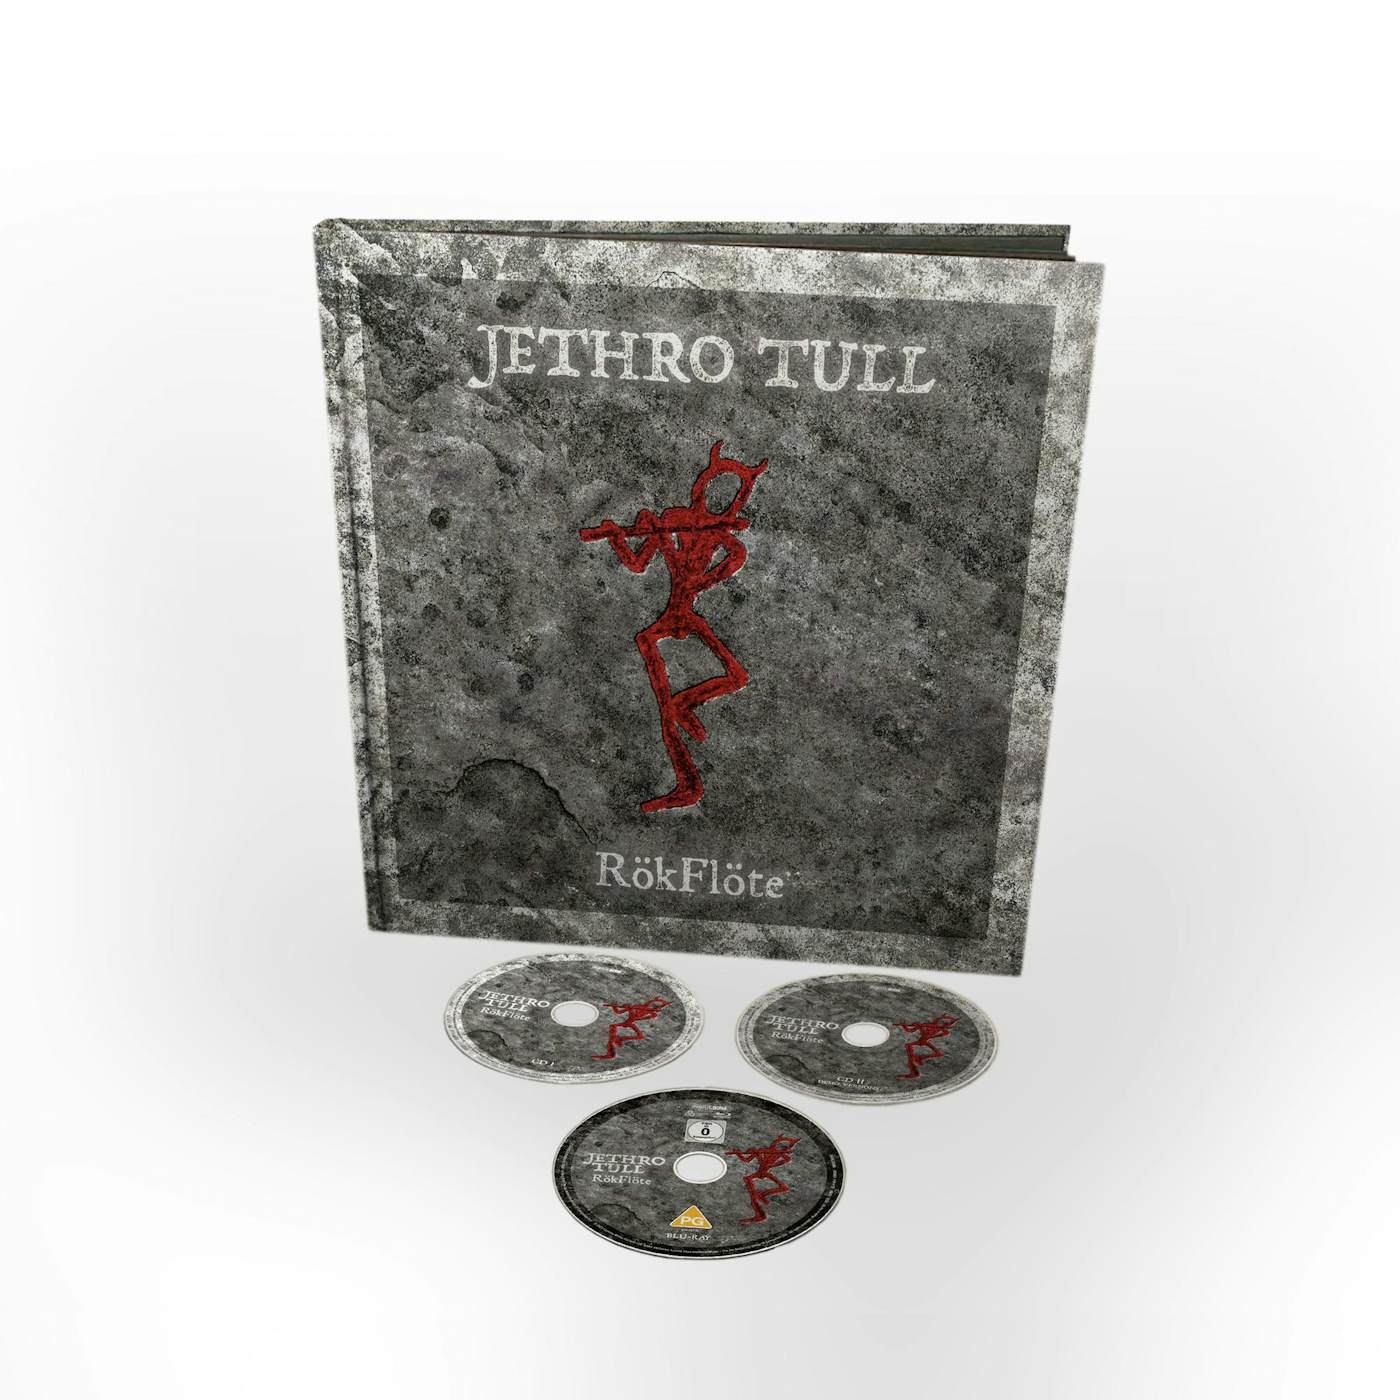 Jethro Tull ROKFLOTE CD